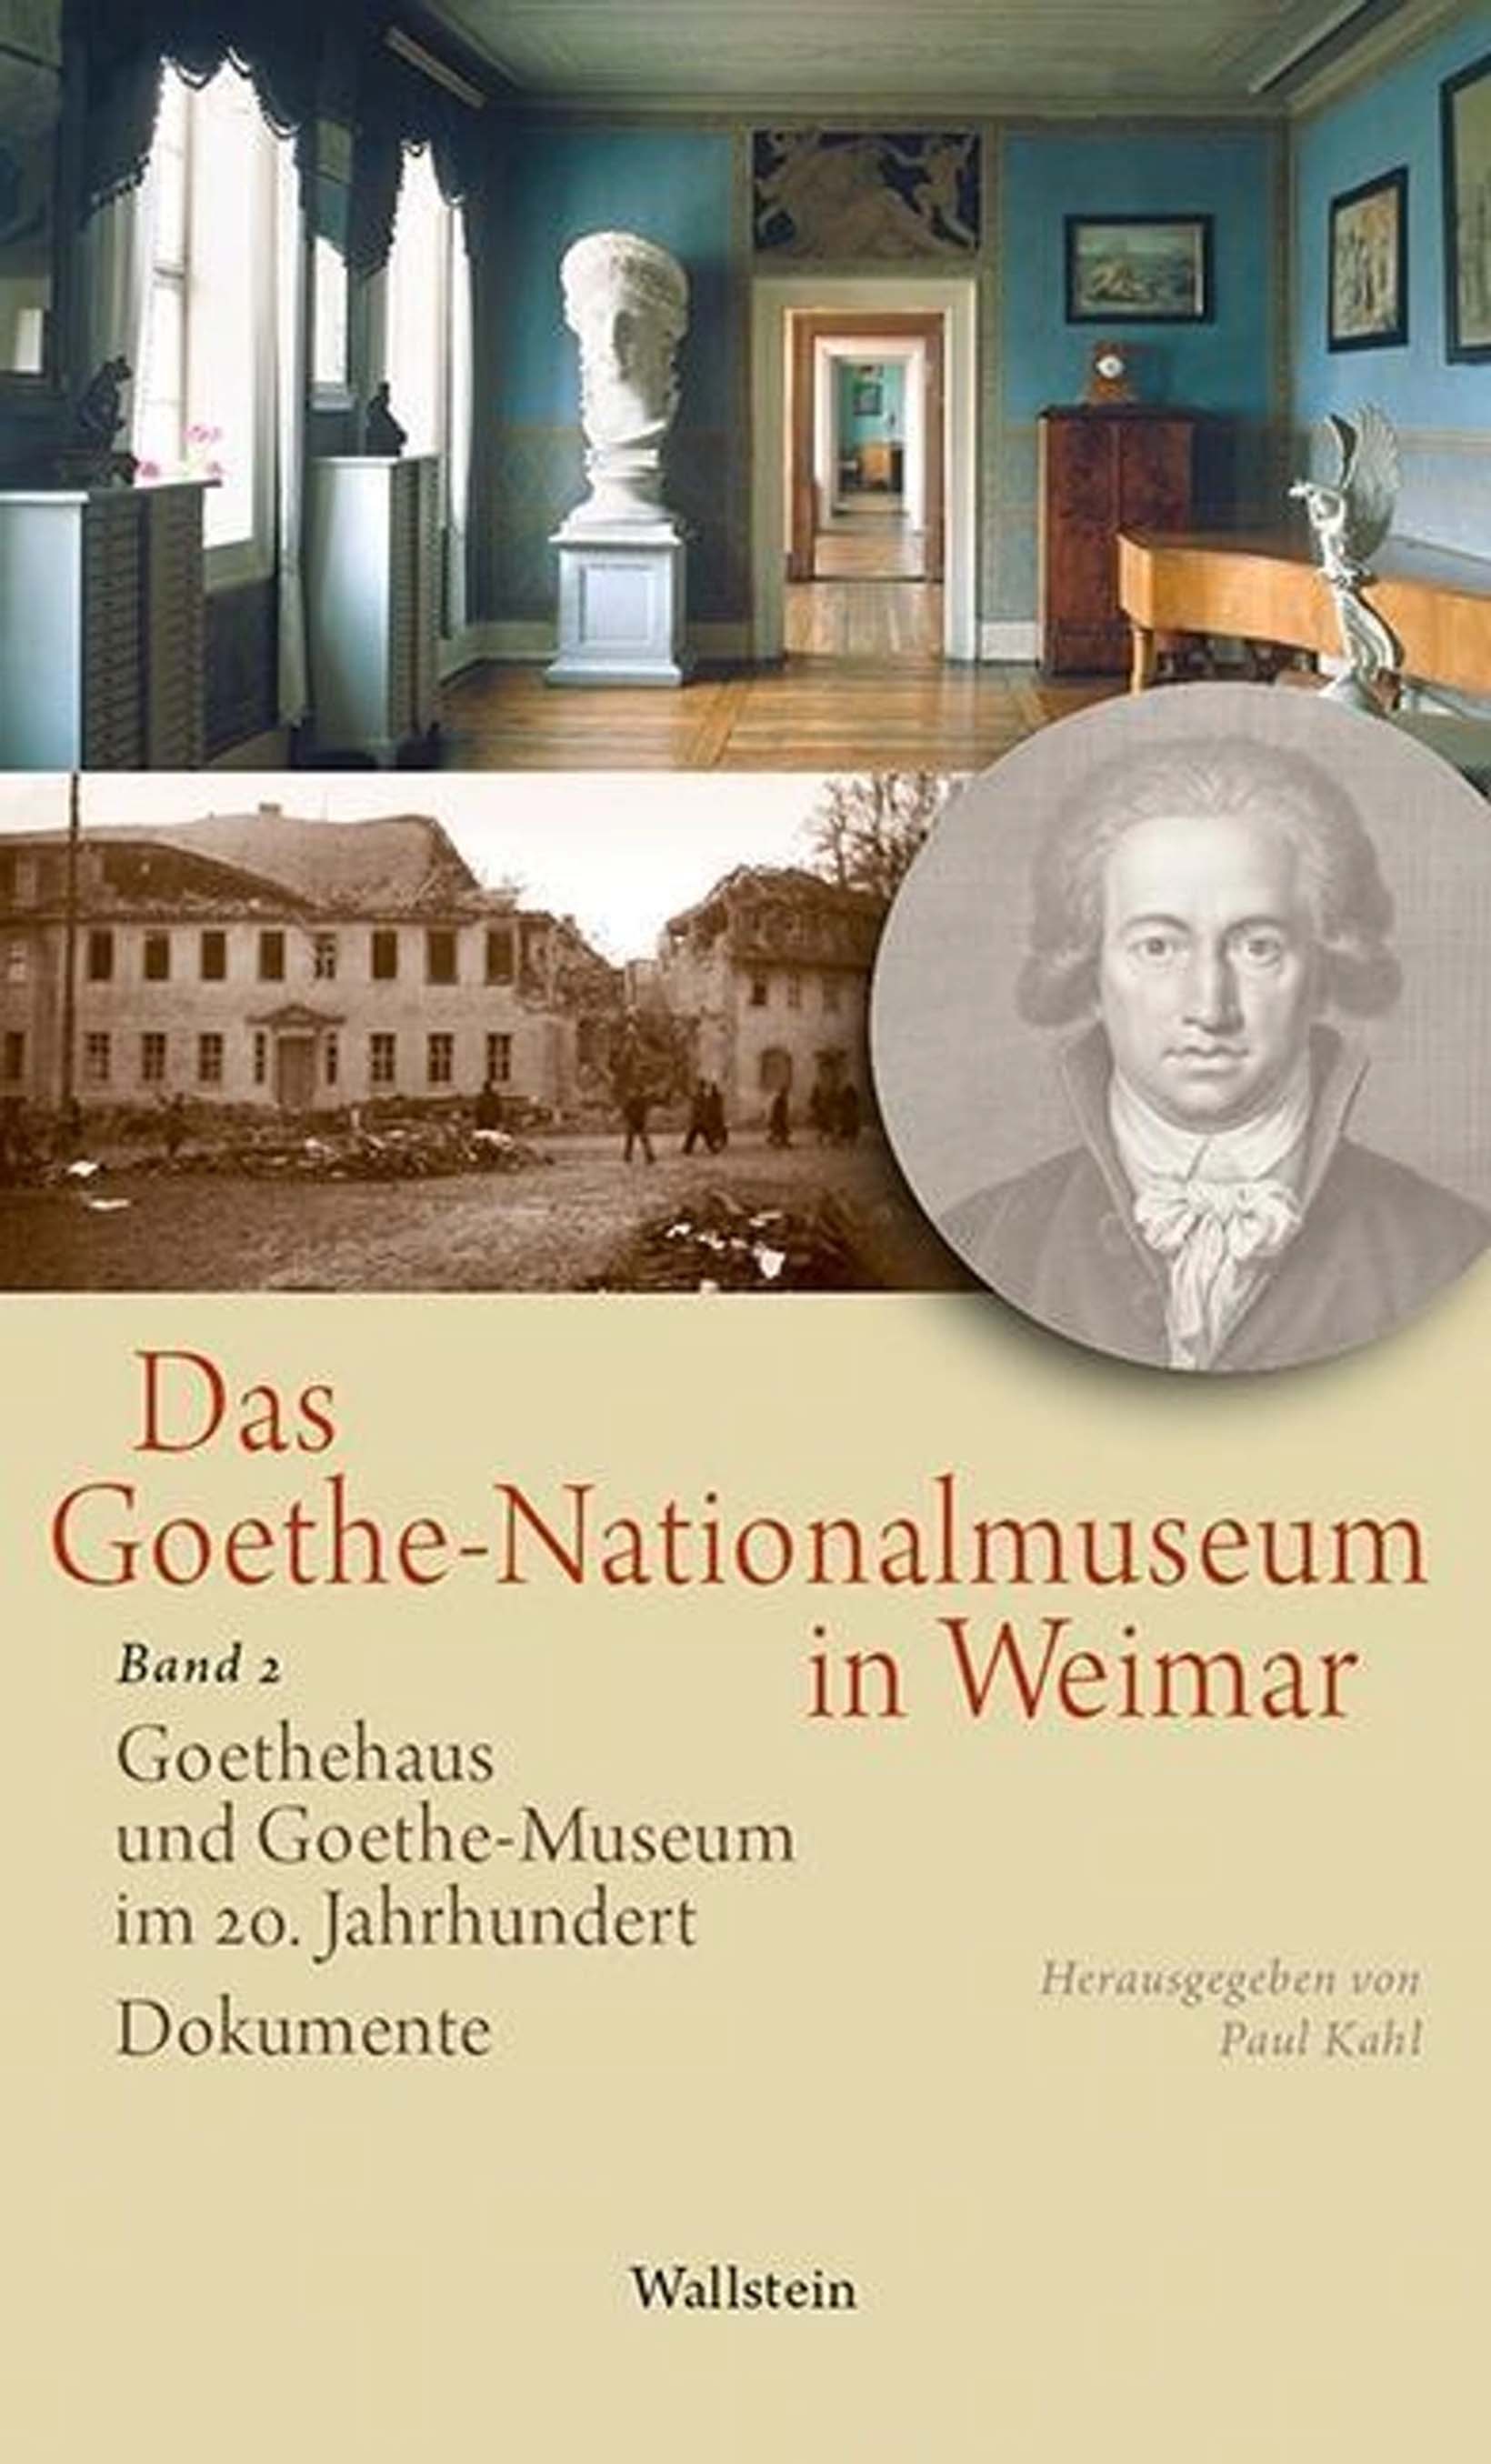 Bucheinband von »Das Goethe-Nationalmuseum in Weimar, Band 2: Goethehaus und Goethe-Museum im 20. Jahrhundert«